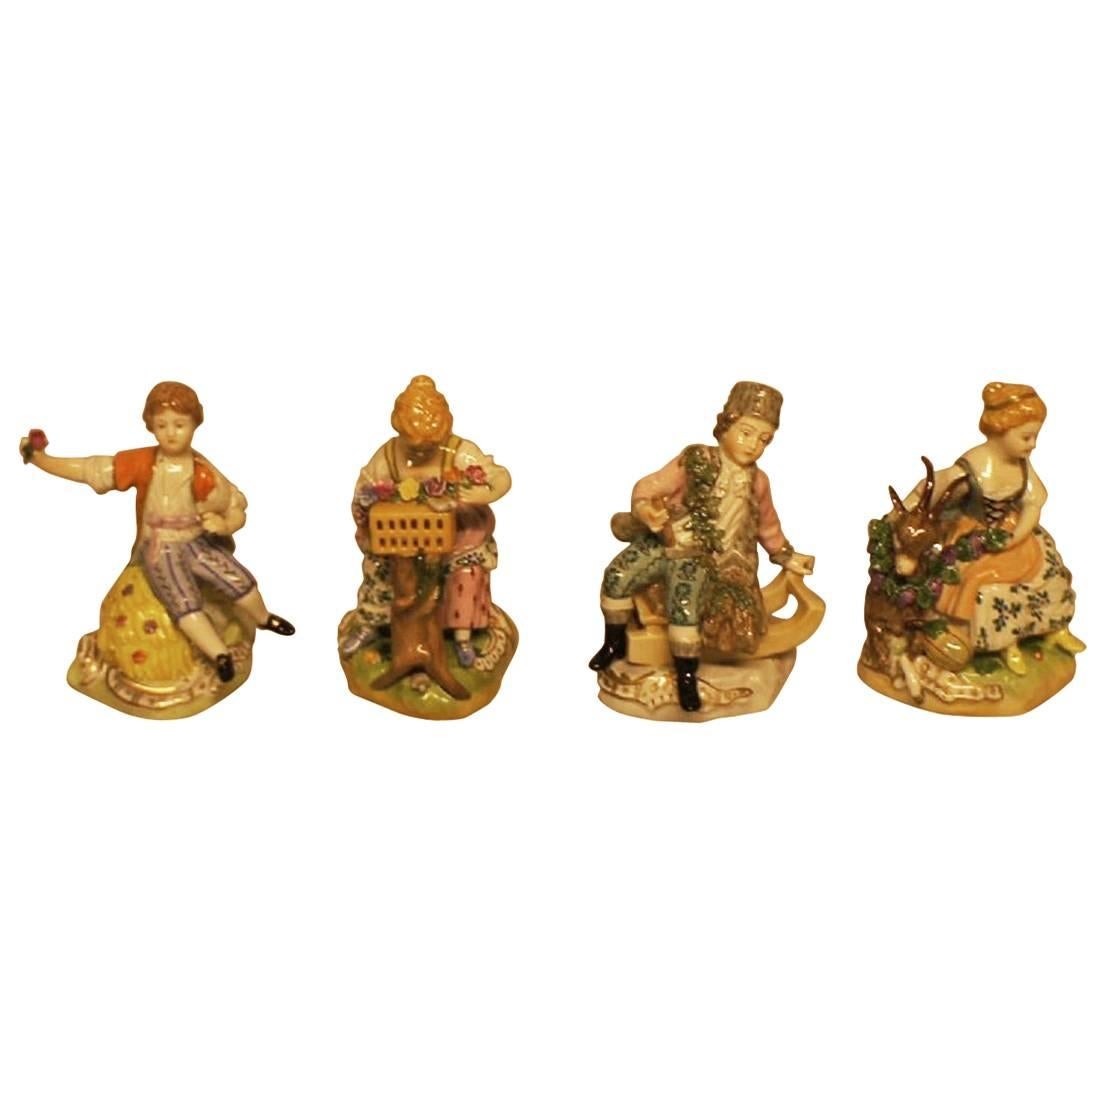 Quatre figurines allemandes en Dresden Porcelain avec technique de surglaçage